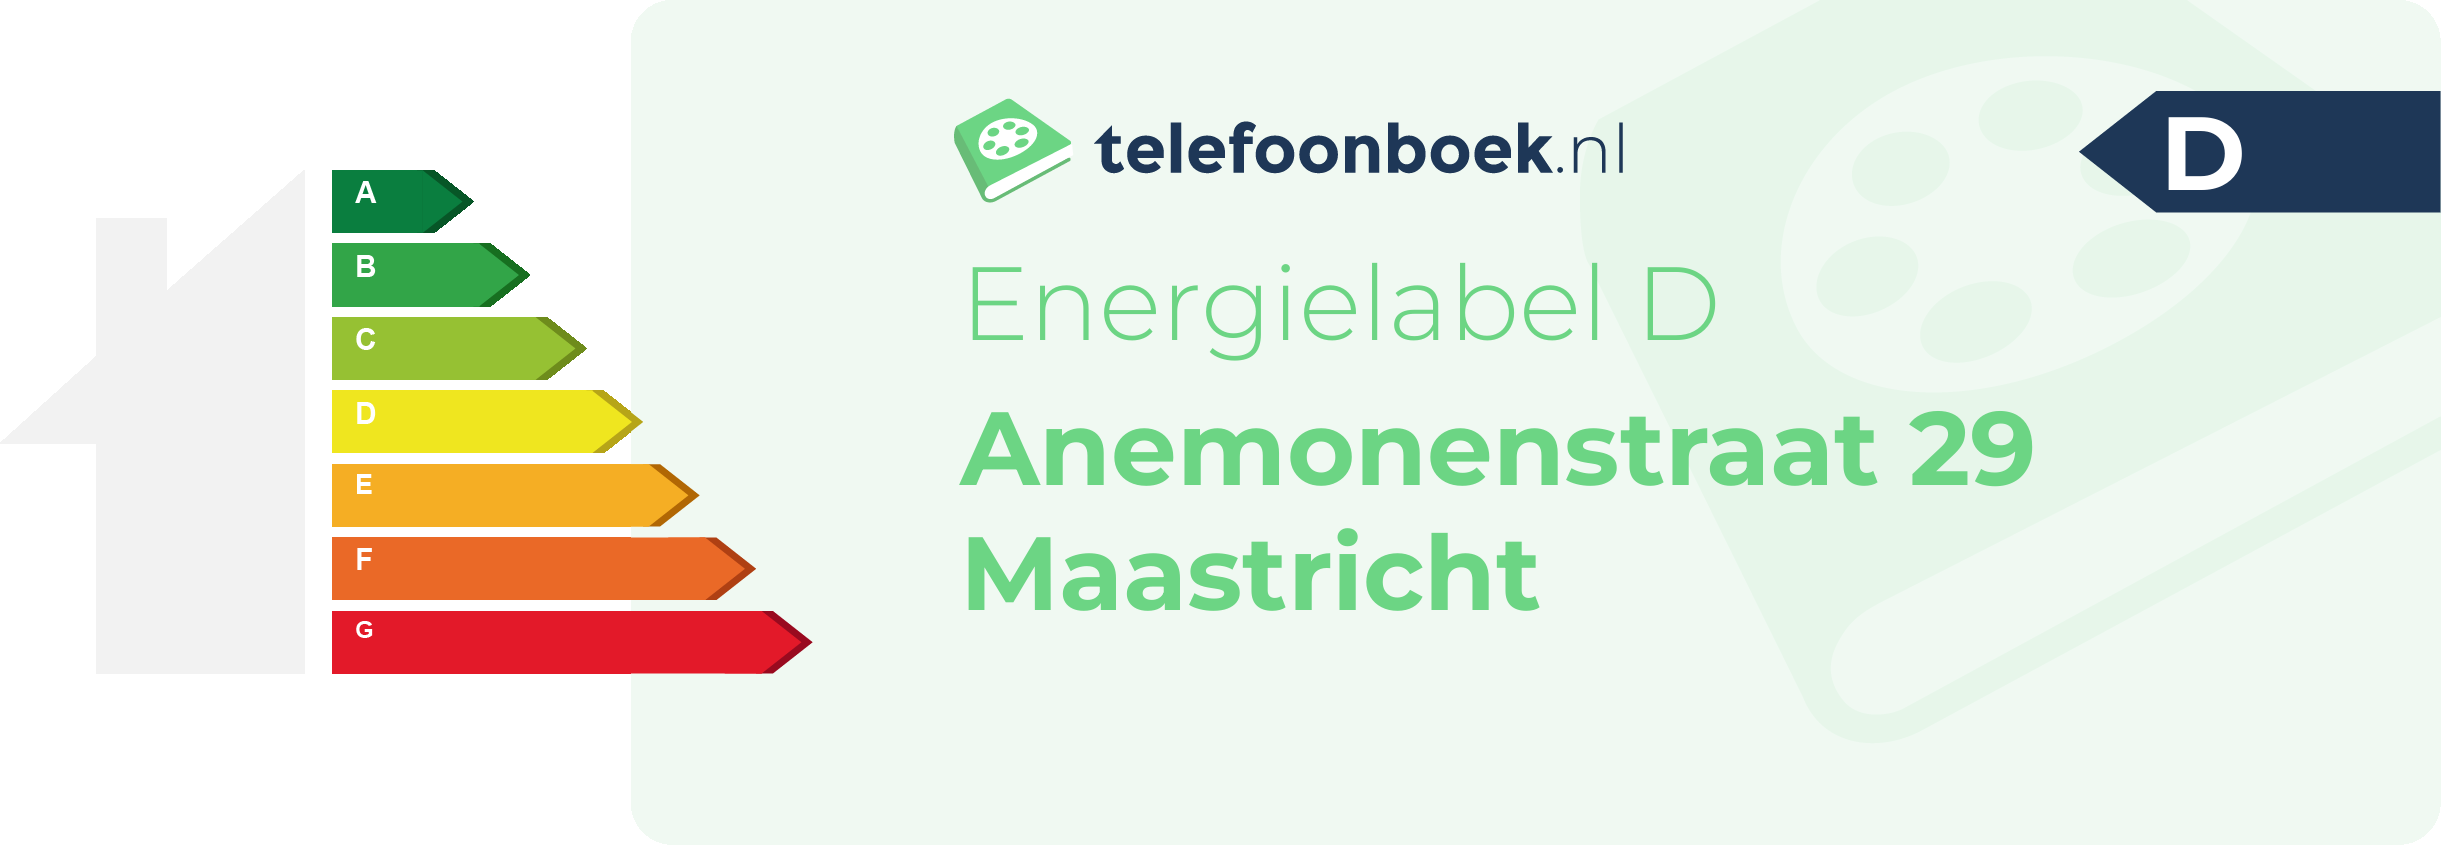 Energielabel Anemonenstraat 29 Maastricht